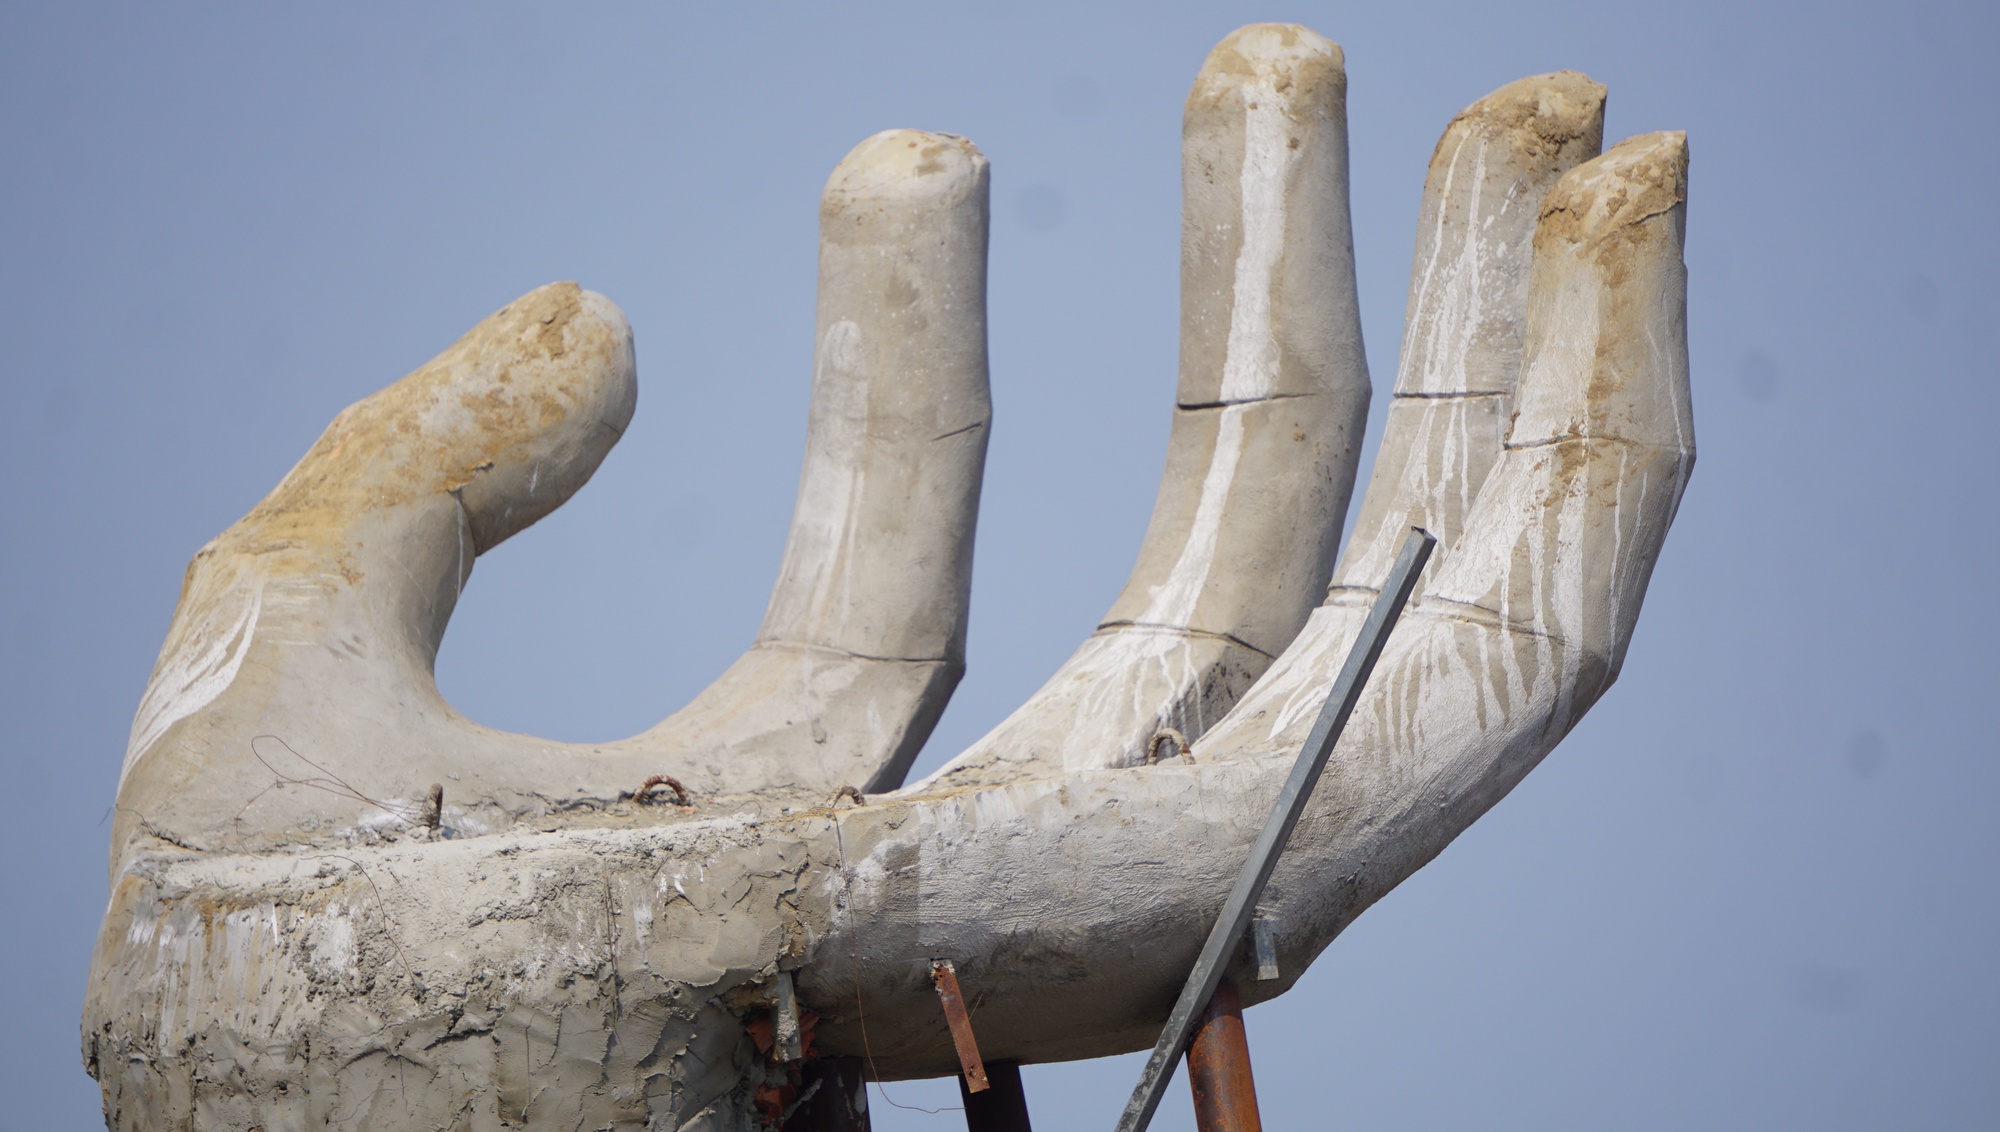 5 'bàn tay' khổng lồ xuất hiện trên bãi biển Hải Tiến - Ảnh 6.